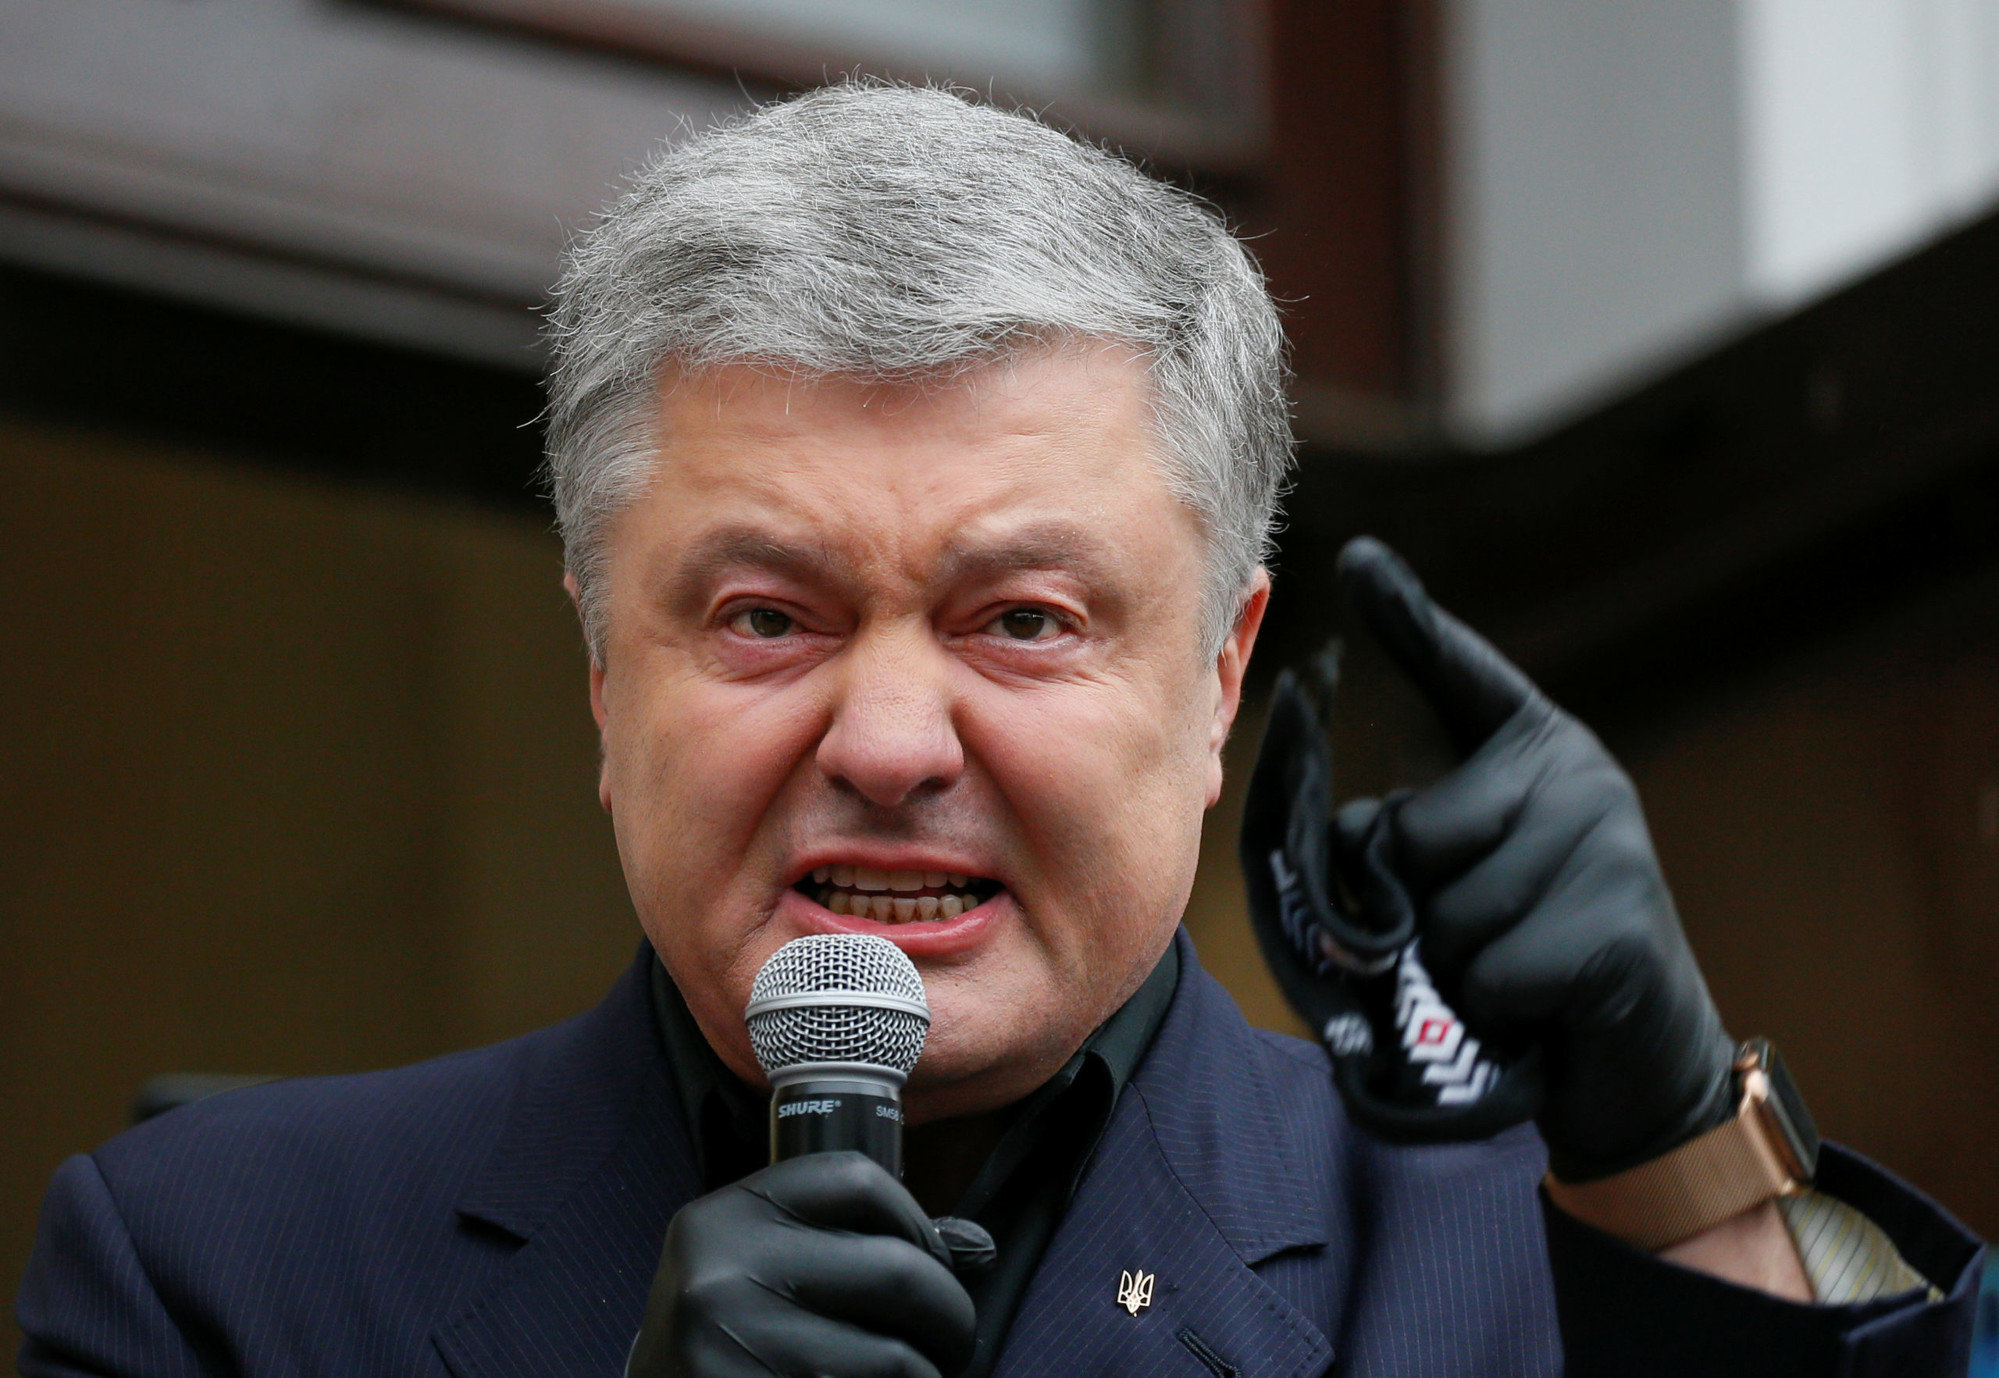 ГБР закрыло несколько уголовных дел против Порошенко